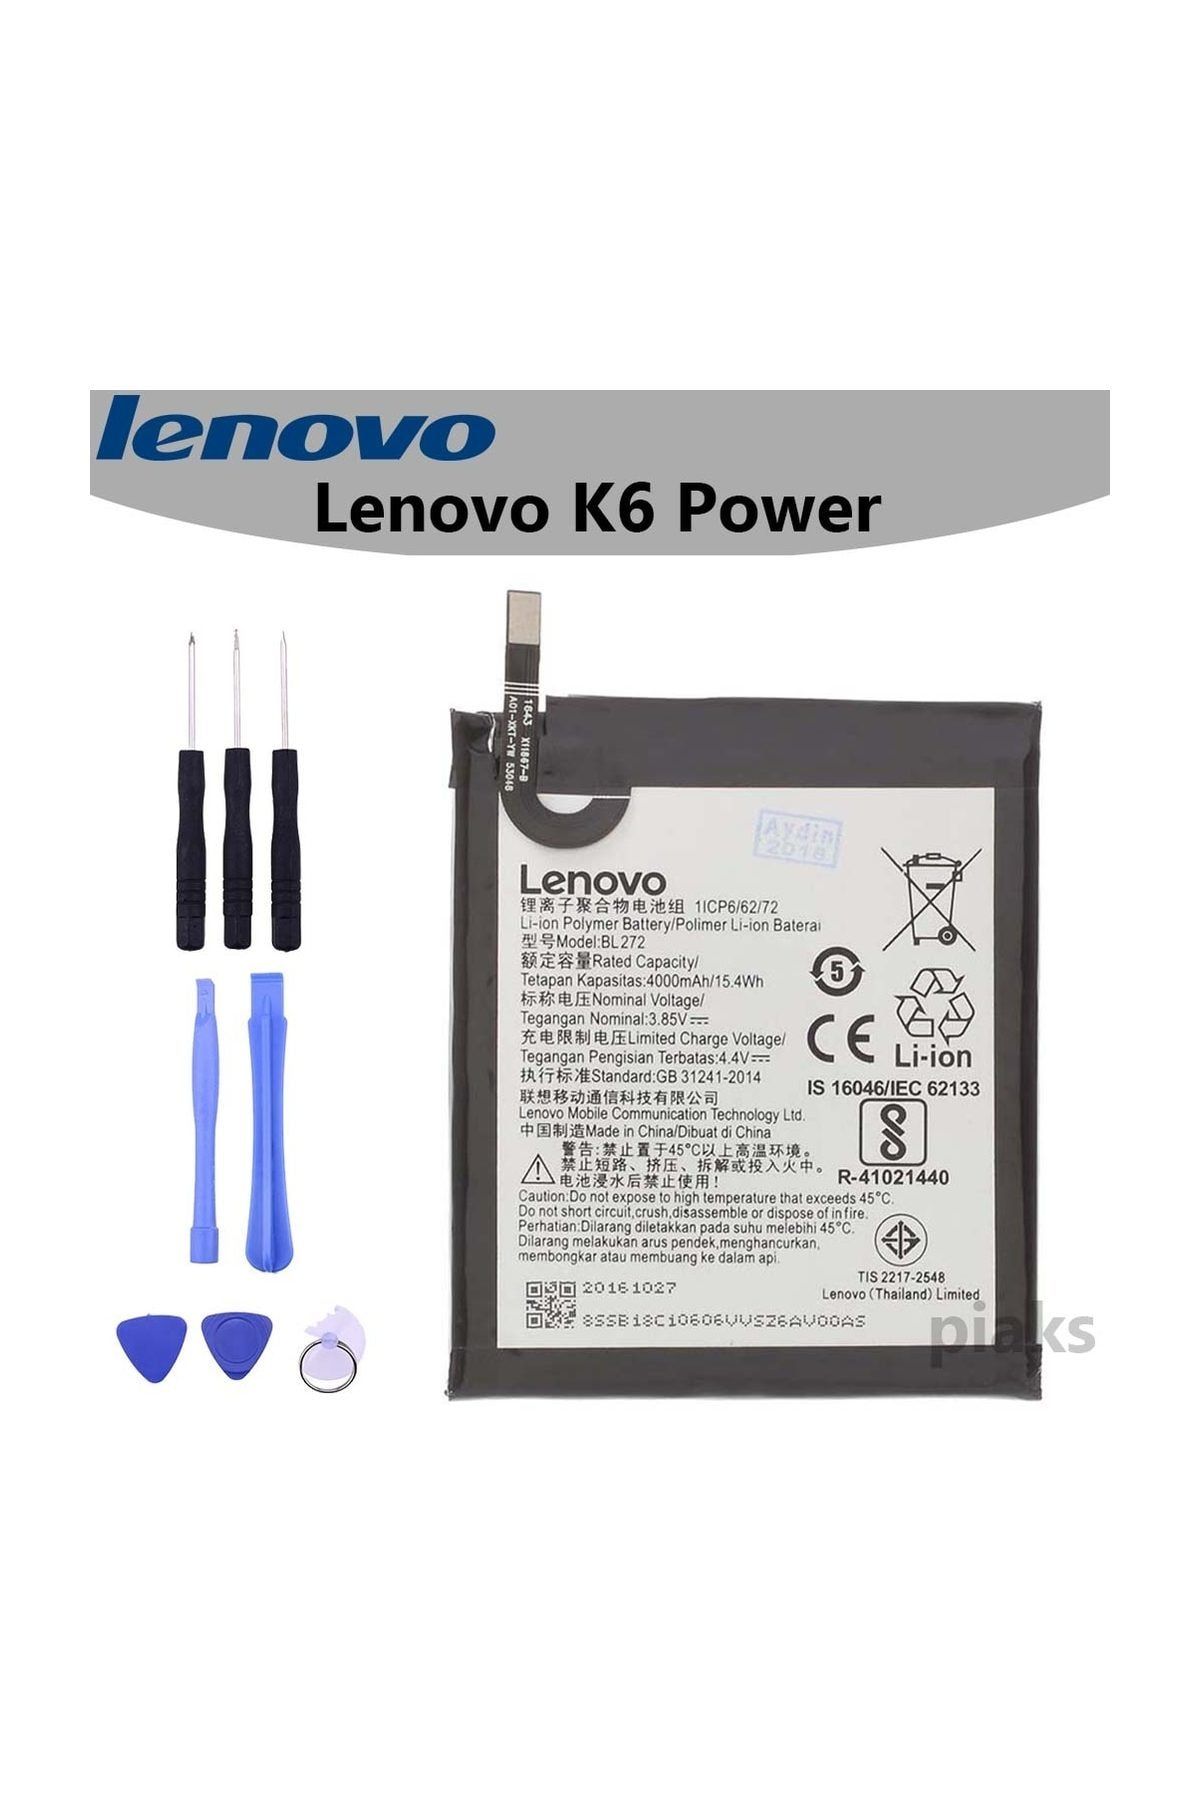 LENOVO K6 Power BL272 Batarya Pil ve Tamir Seti